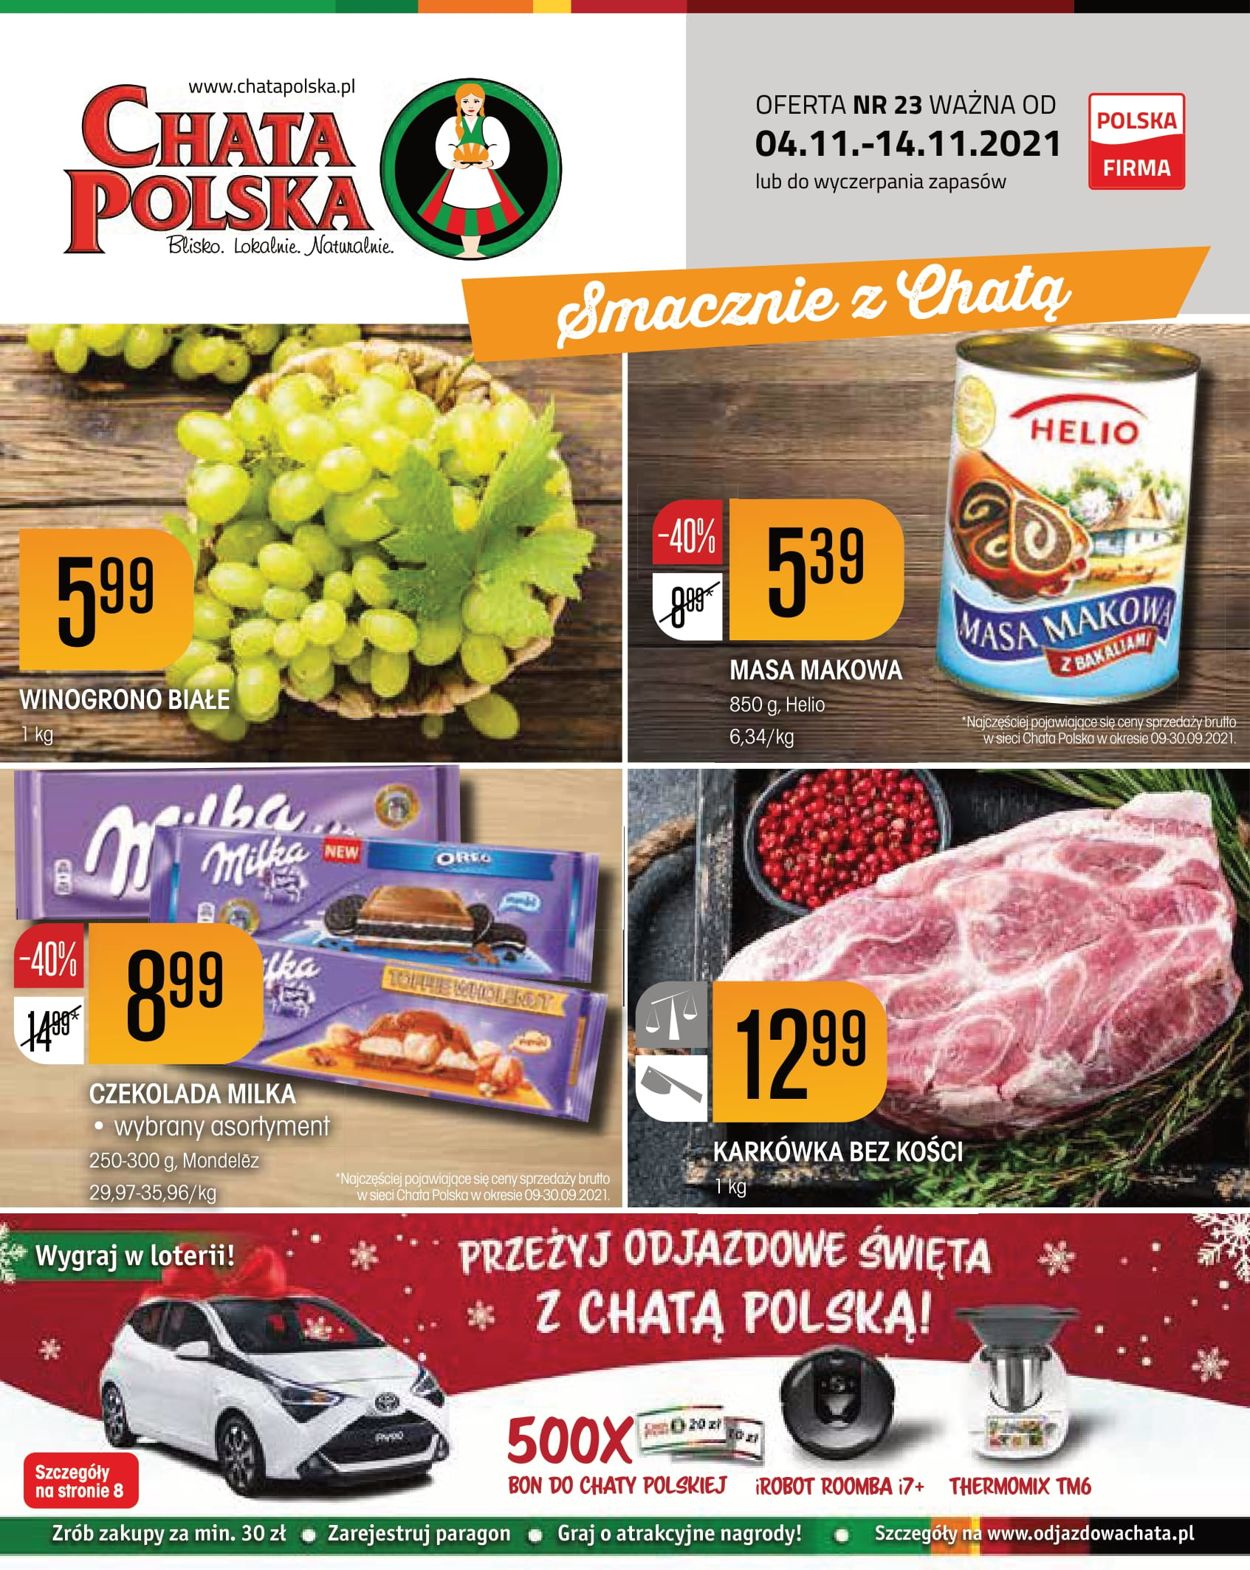 Chata Polska Aktualna gazetka 04.11 14.11.2021